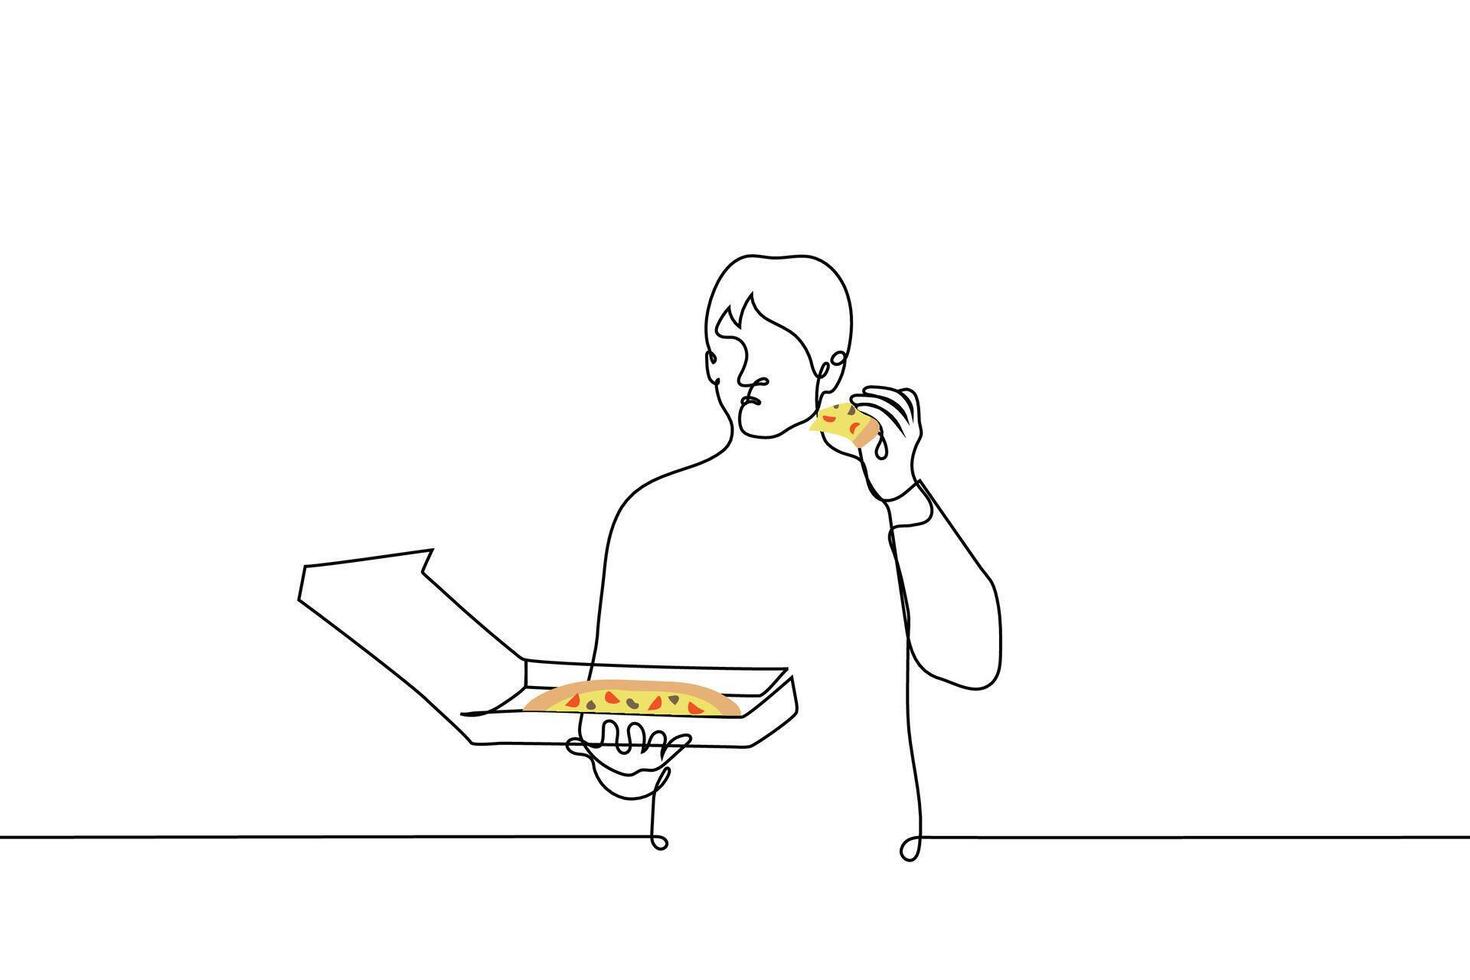 Mann steht mit ein Box von Pizza und isst ein Stück - - einer Linie Zeichnung Vektor. Konzept Essen Pizza allein, Pizza zum einer vektor